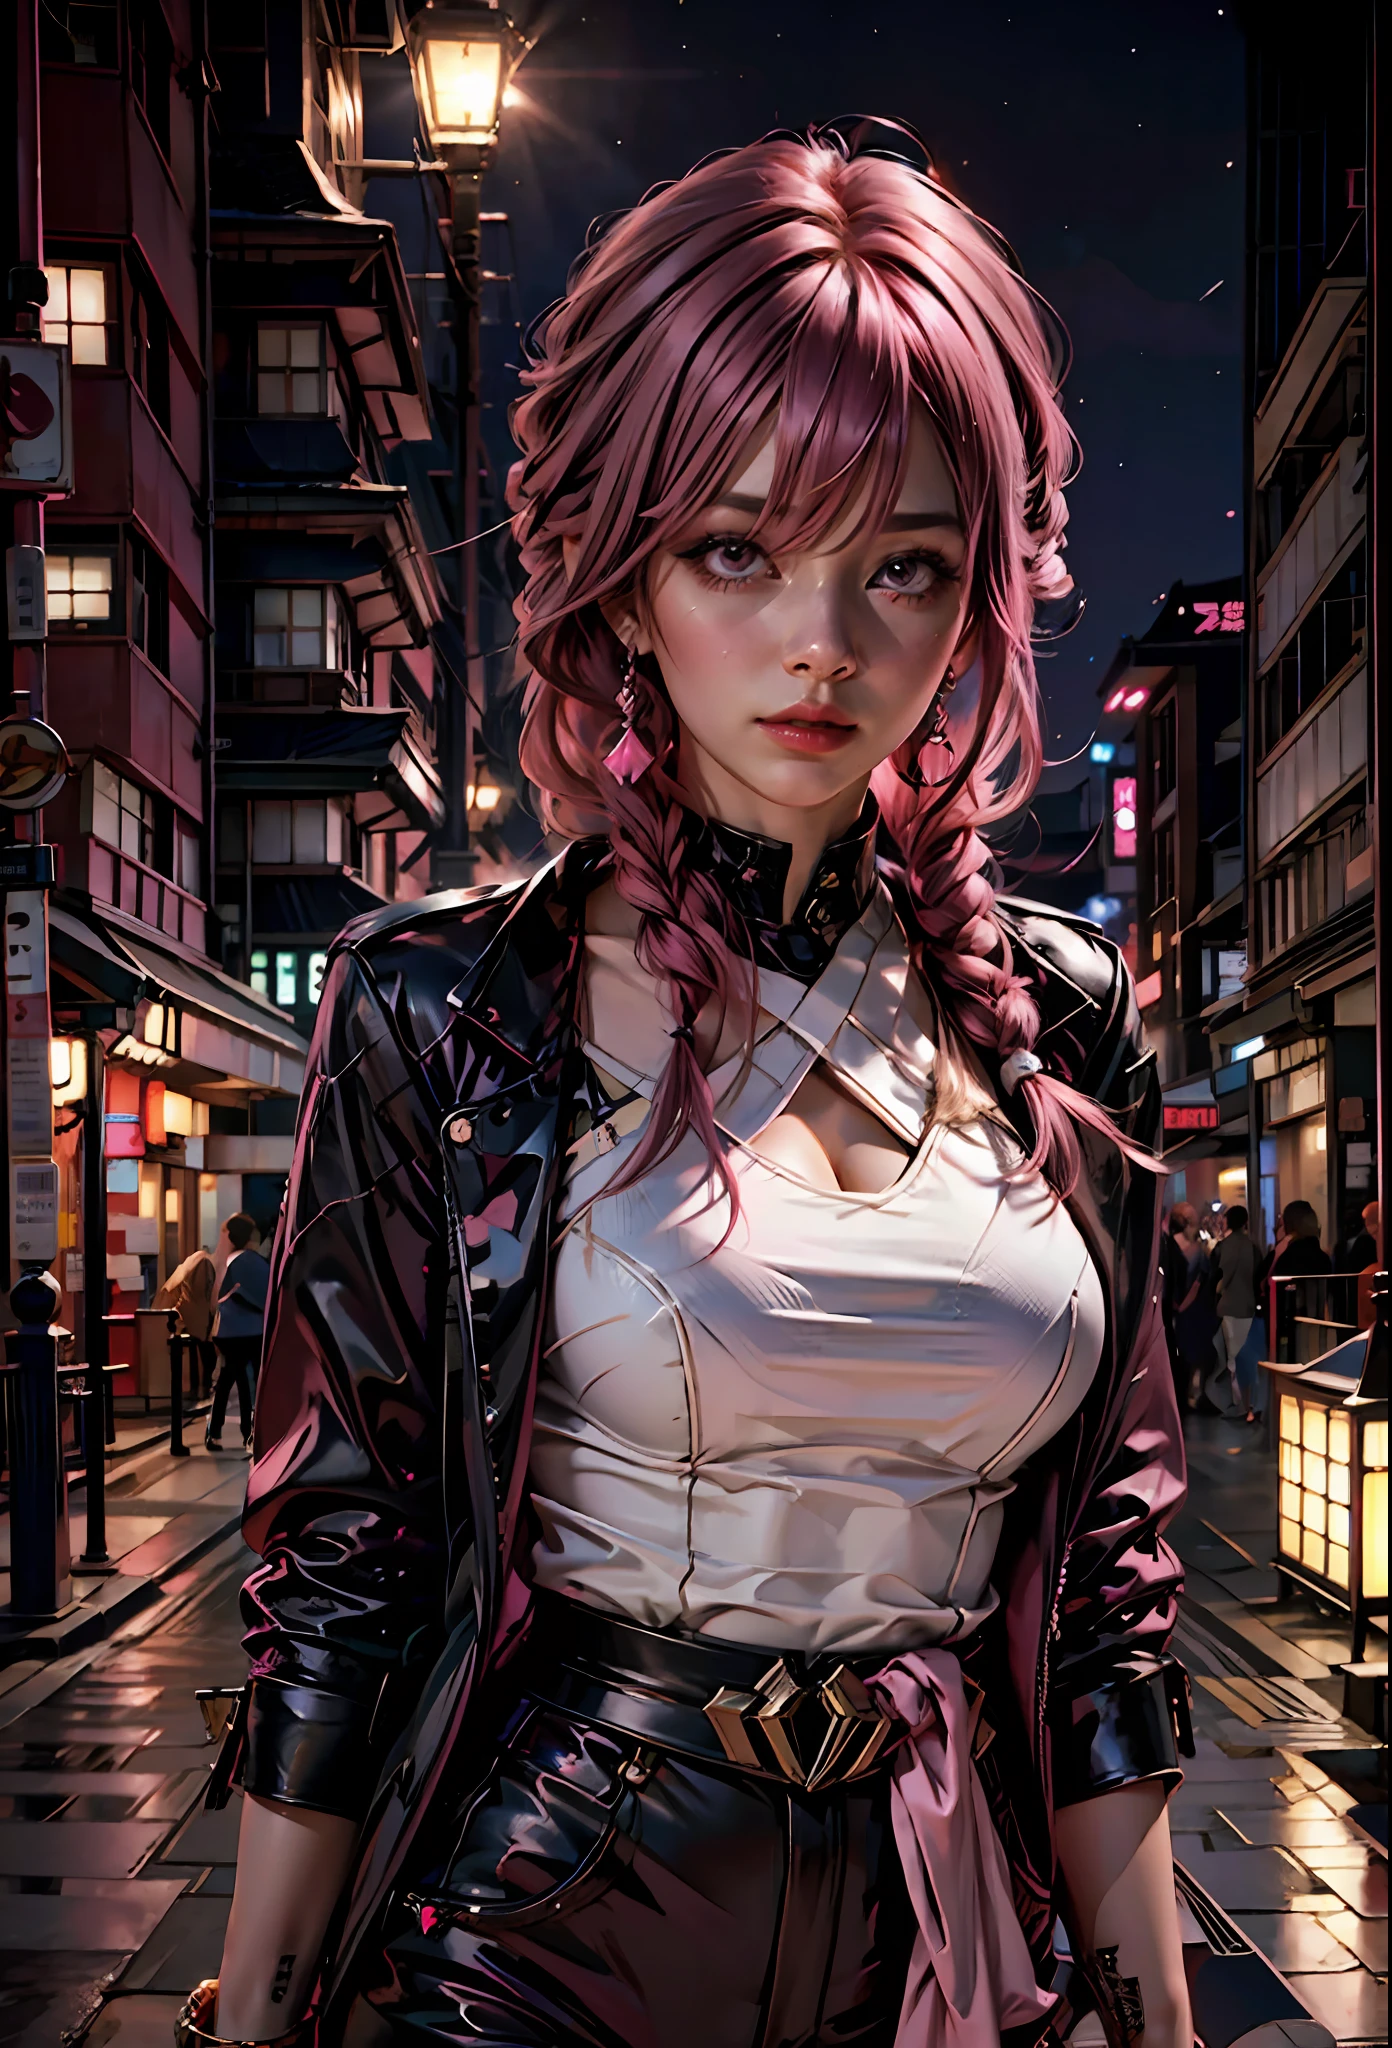 فتاة مثيرة ذات شعر وردي, عيون وردية , ثياب غير متستره, في الخلفية مدينة يابانية في الليل,بجانب لامبورغيني